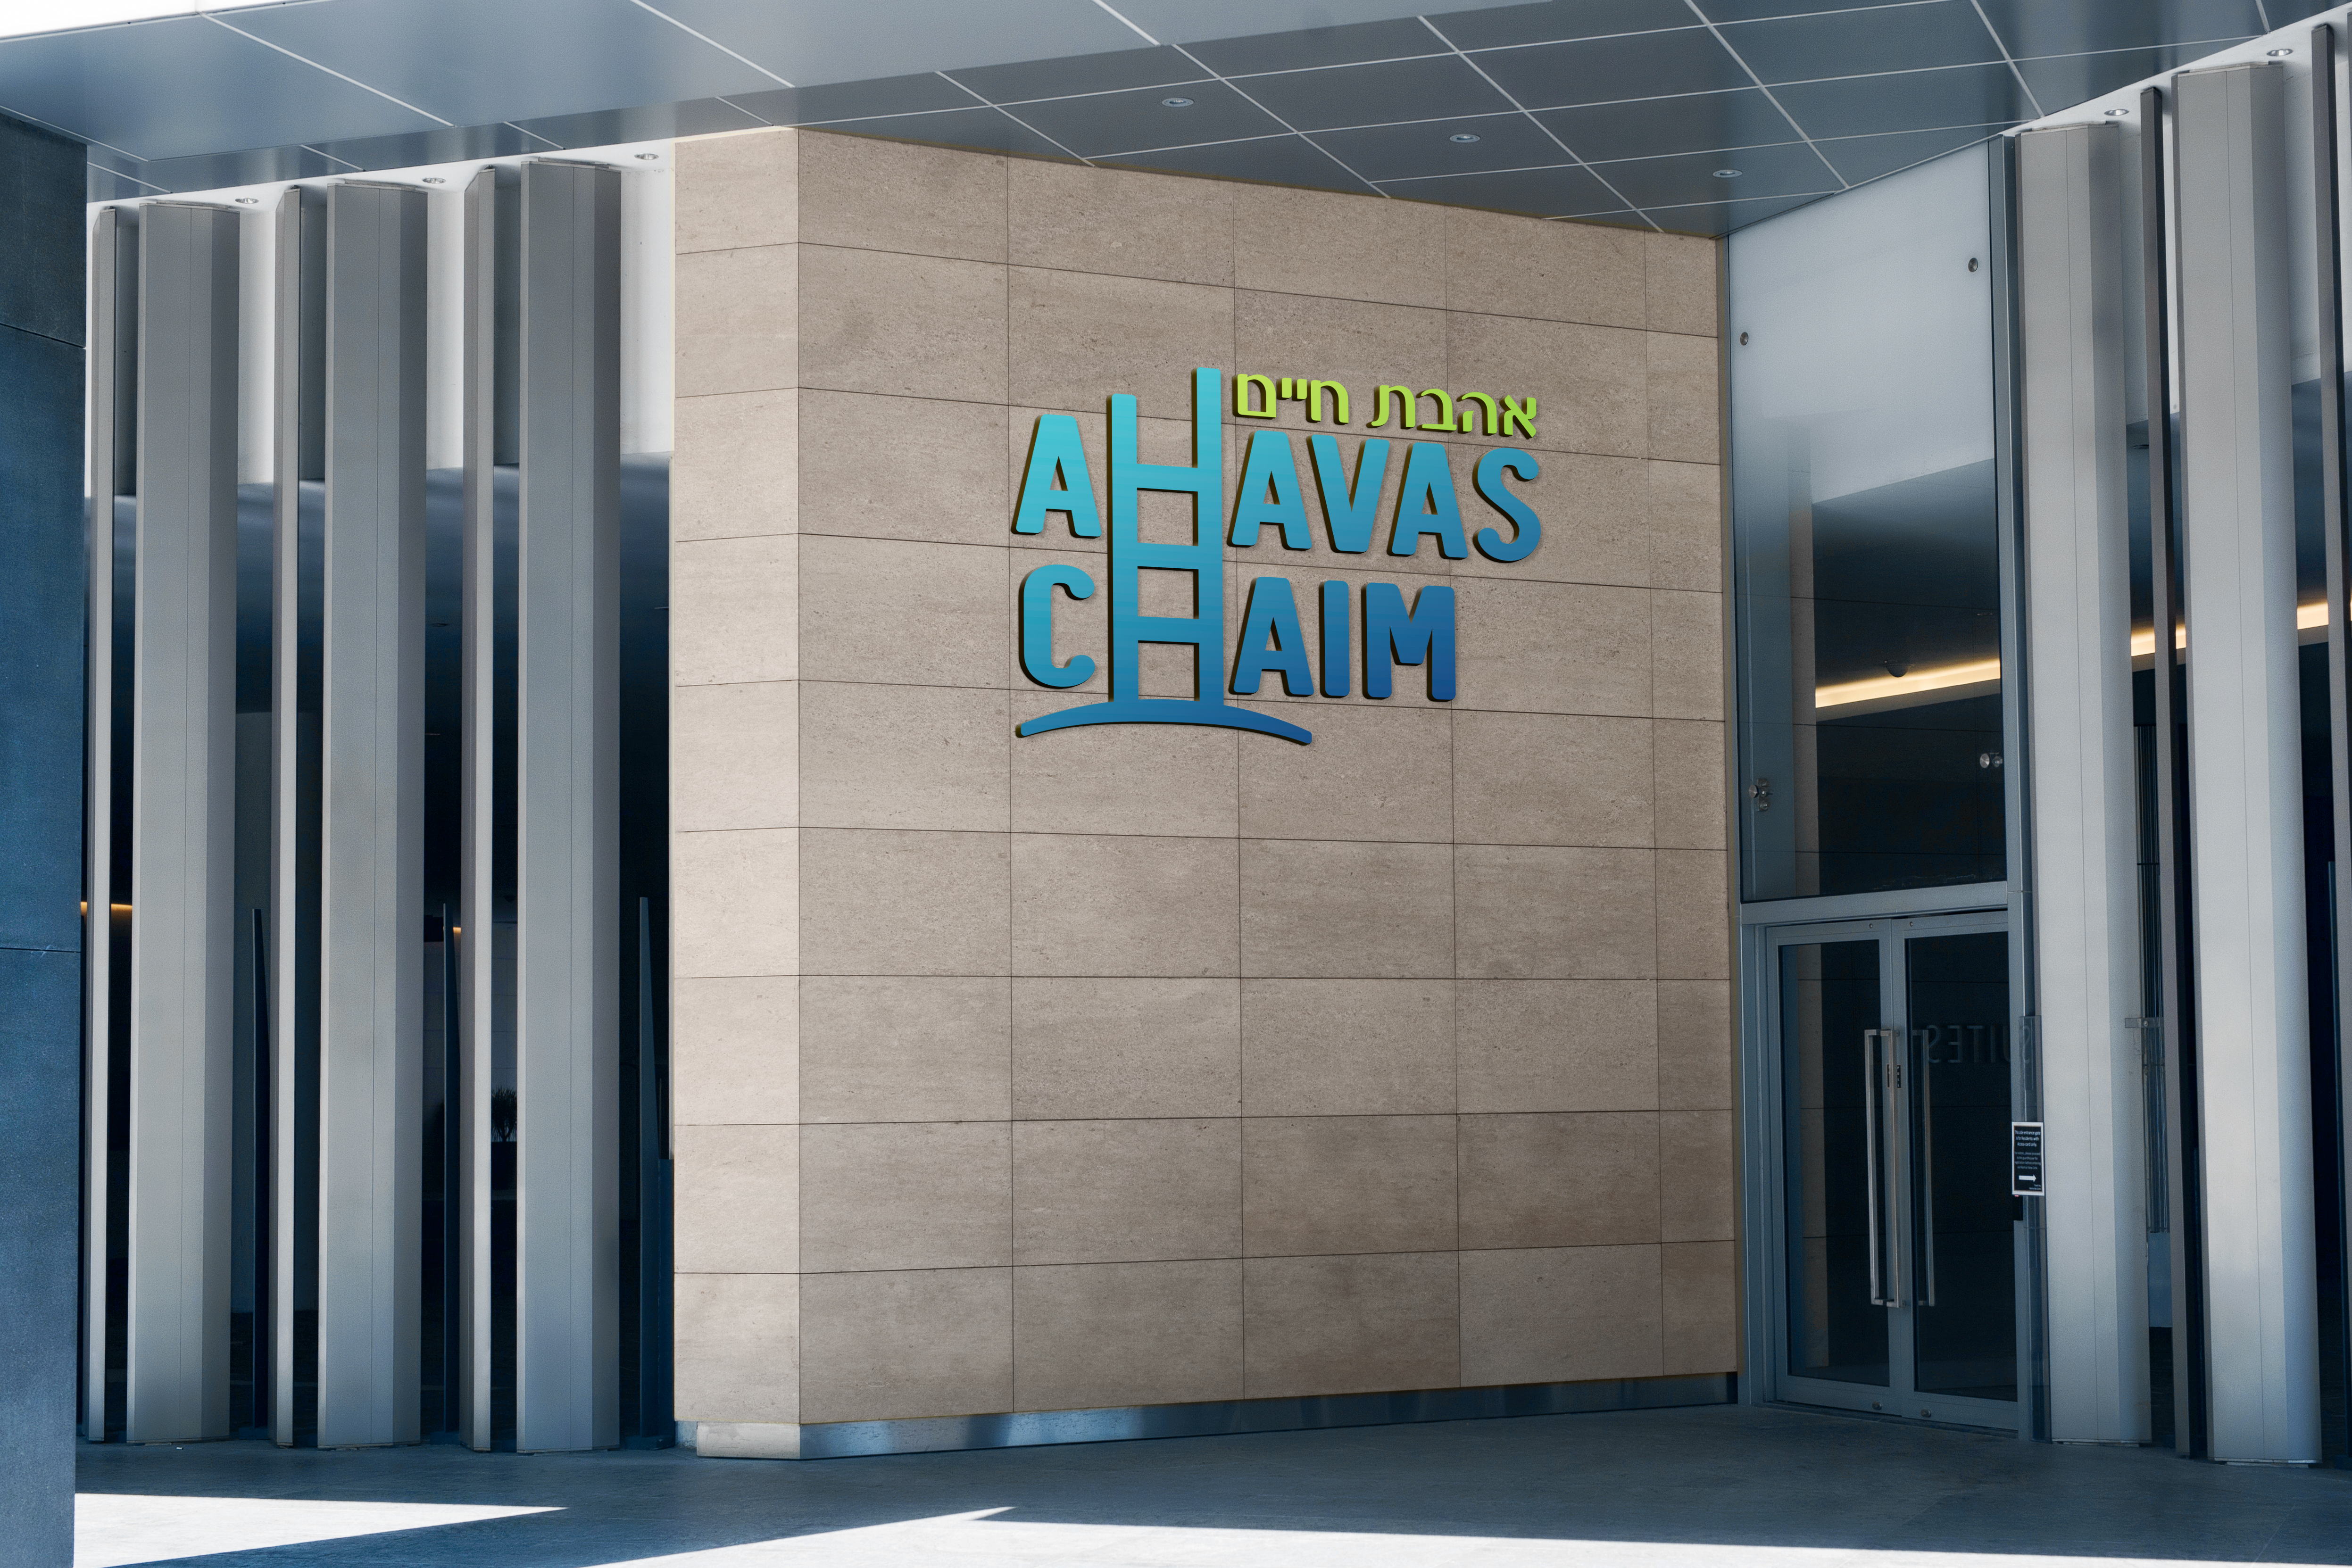 Ahavas chaim logo on a building